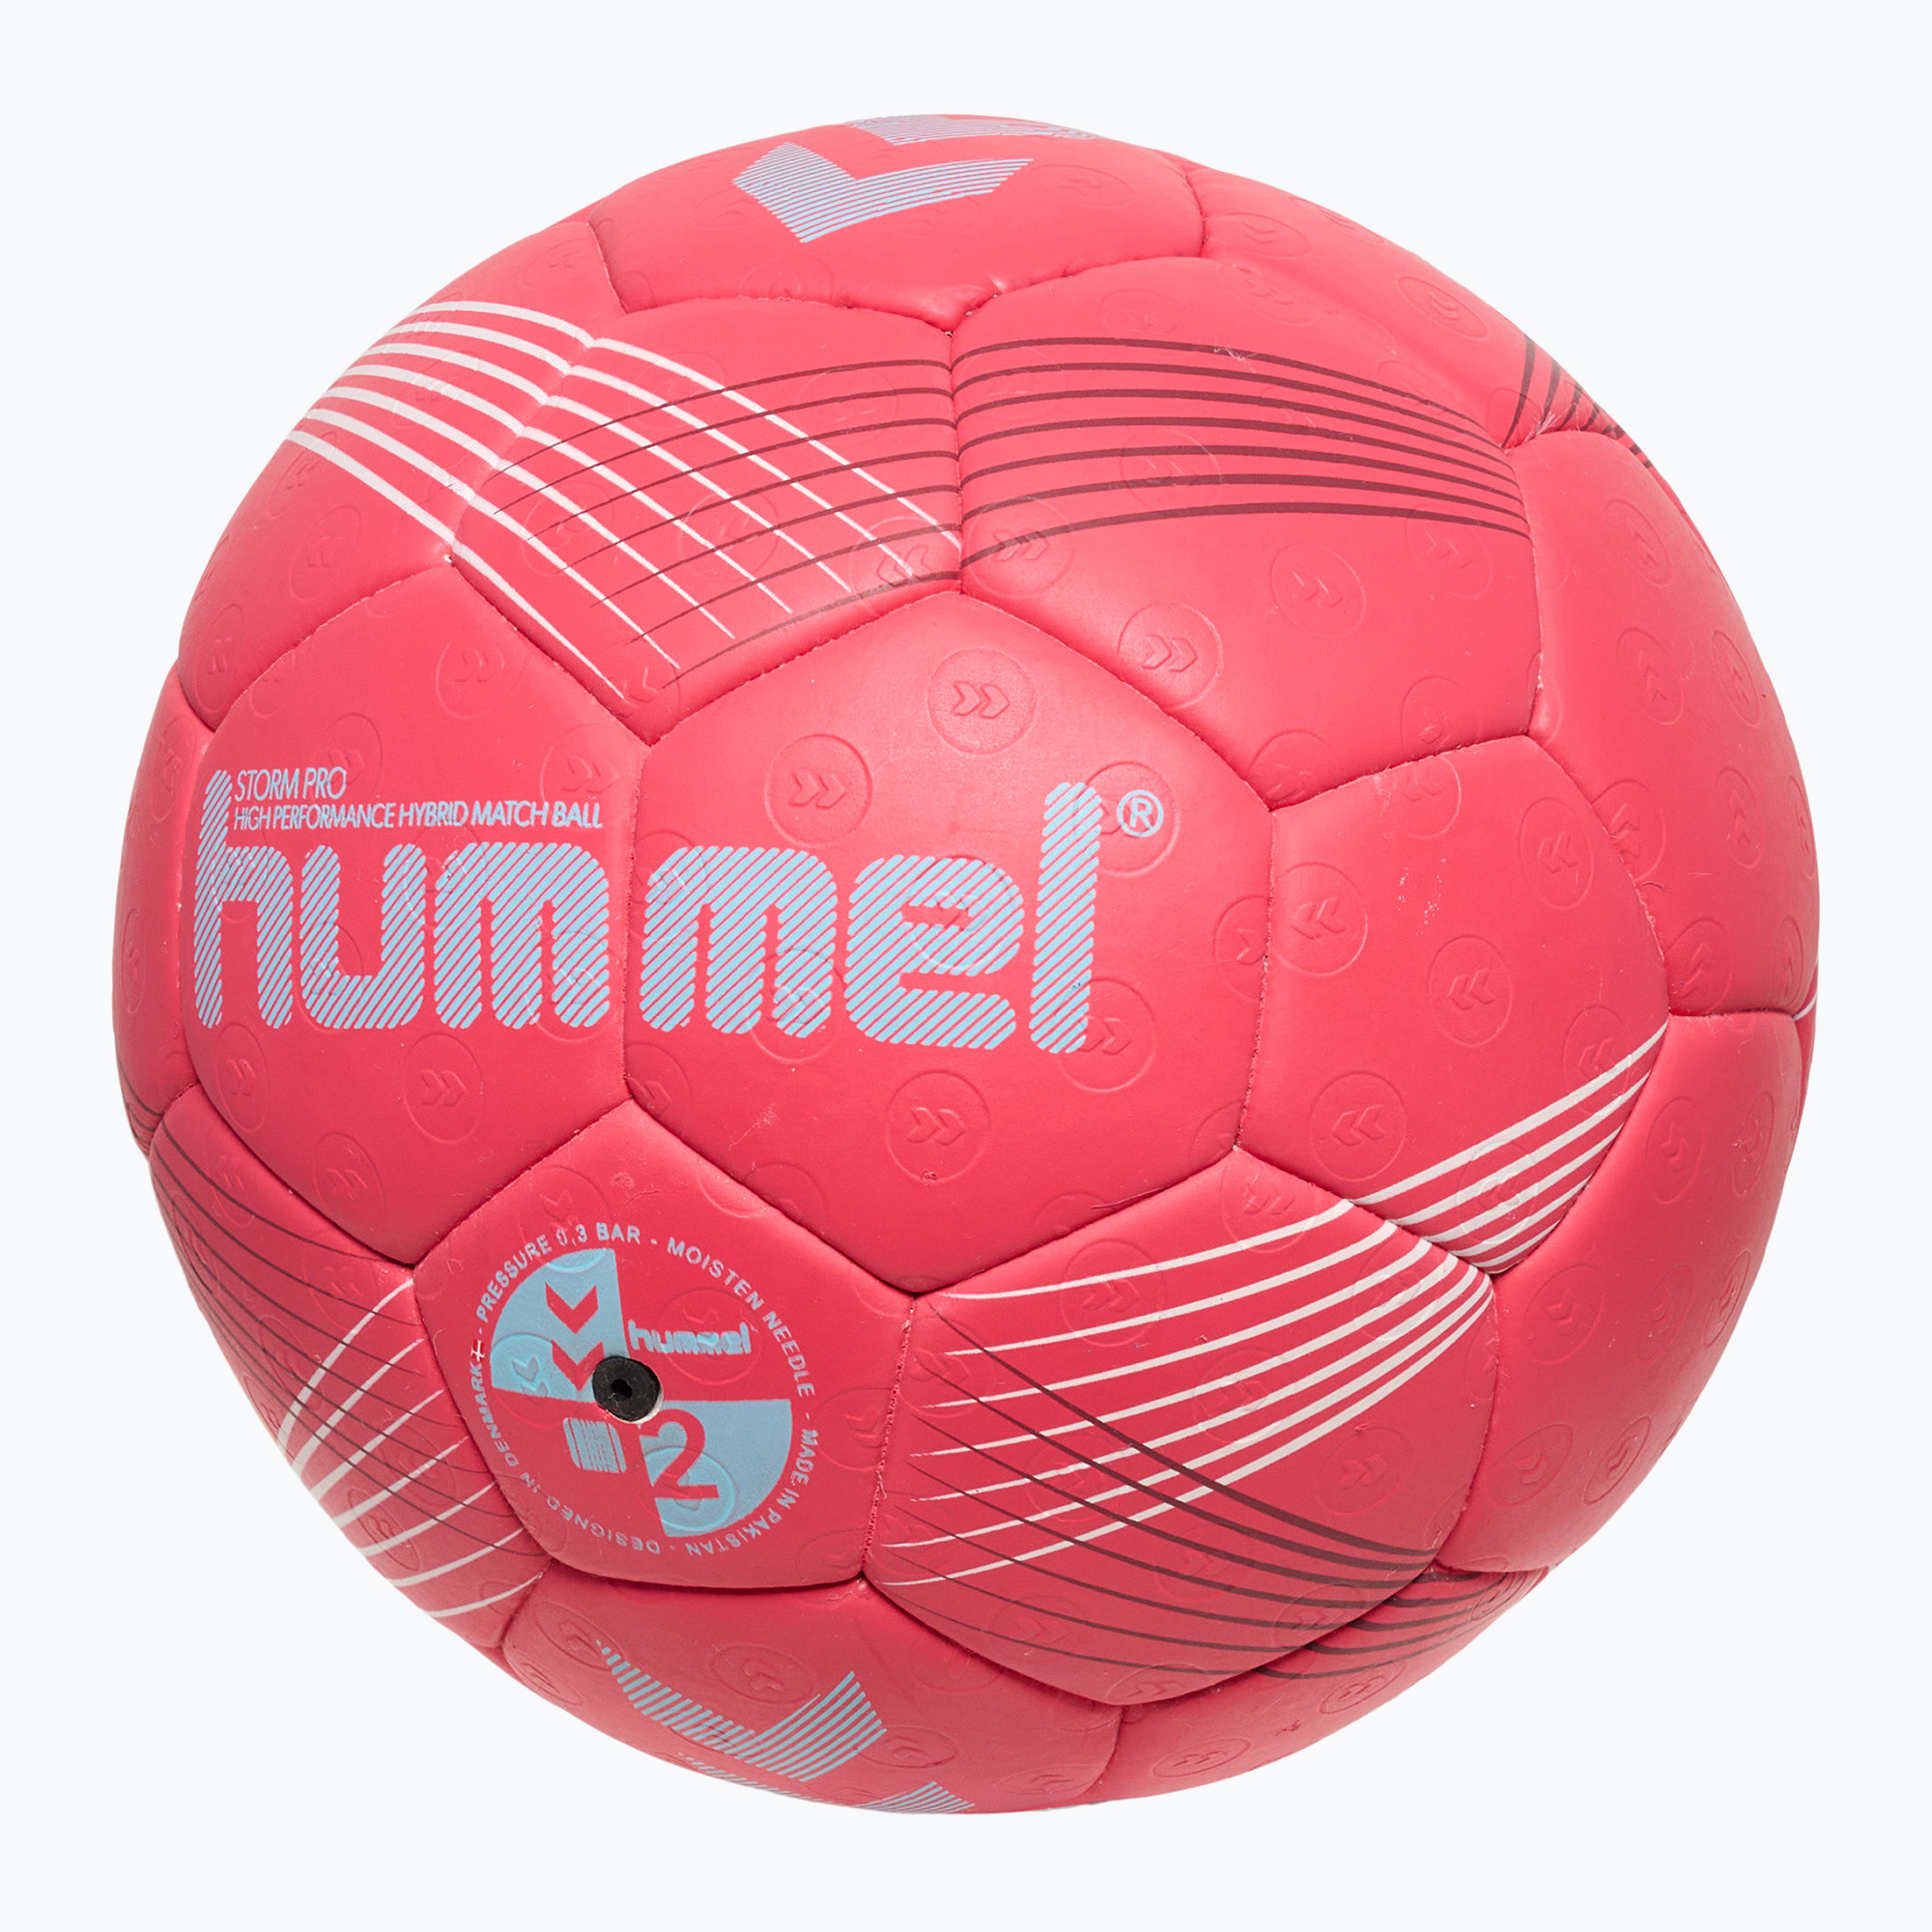 Hummel Strom Pro HB хандбал червено/синьо/бяло размер 3